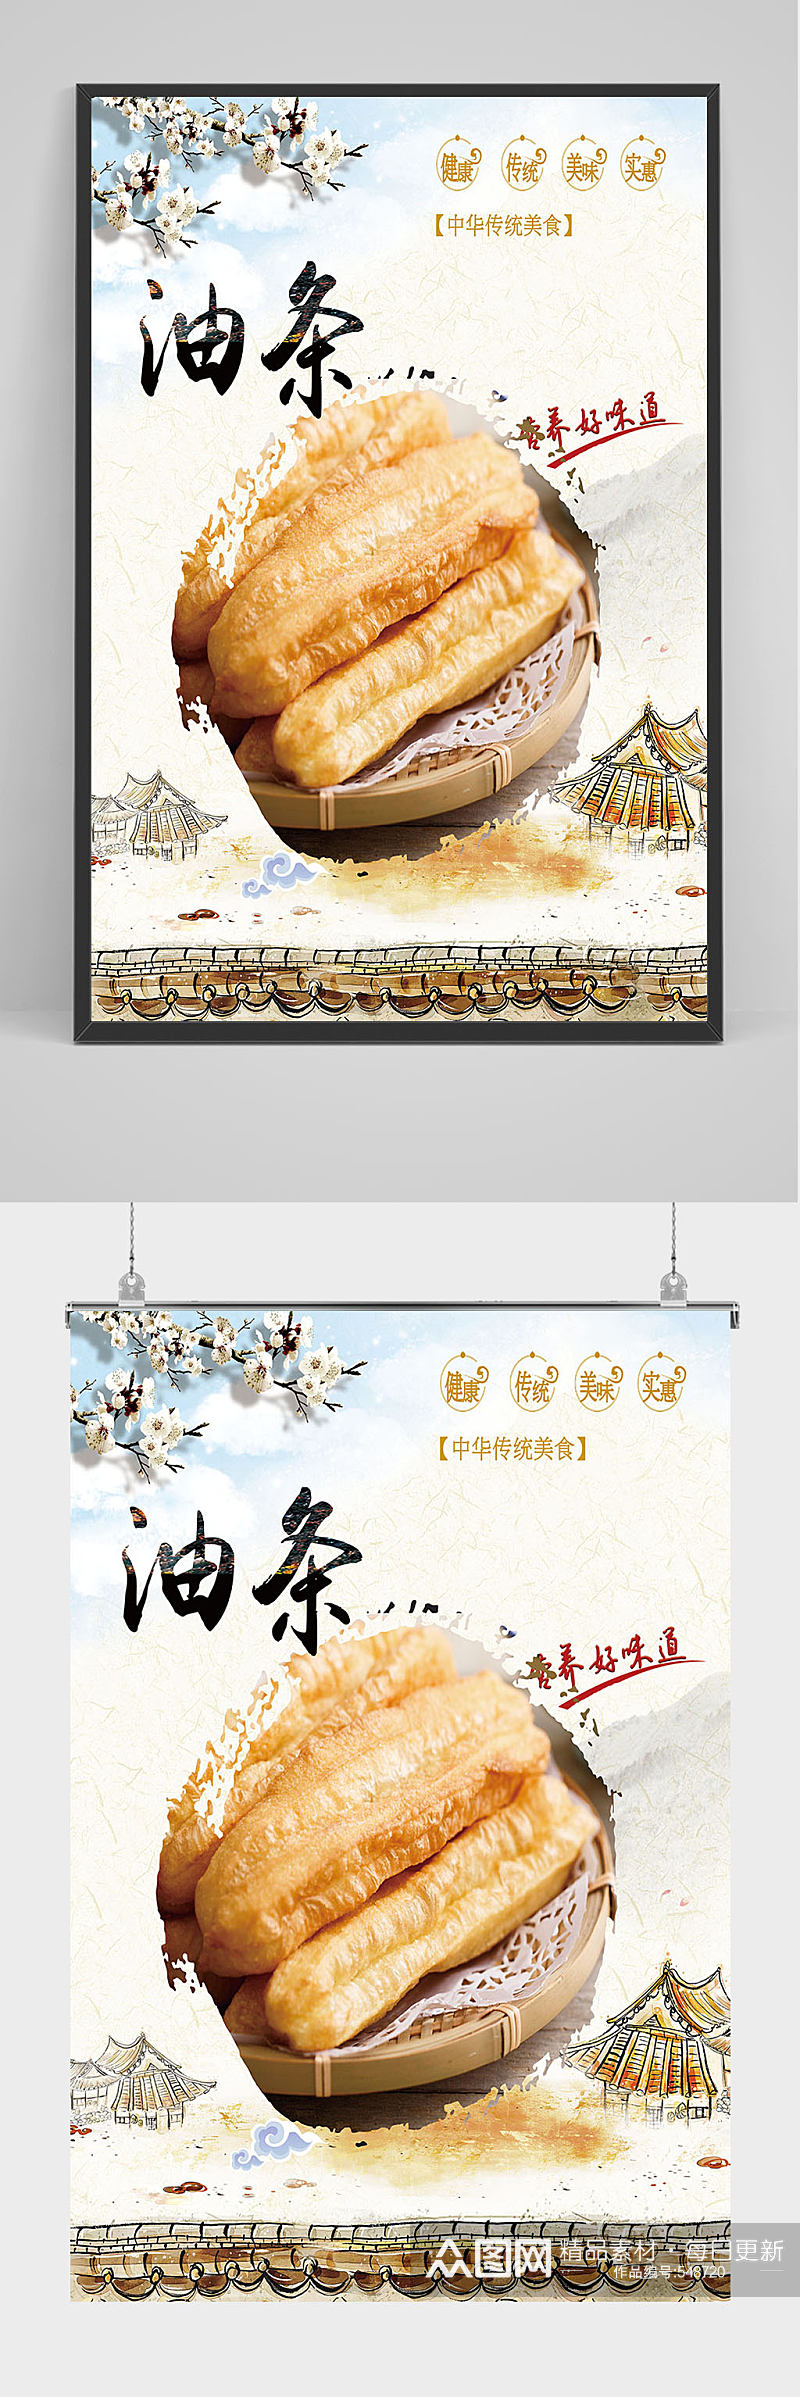 中国风美味油条海报设计素材